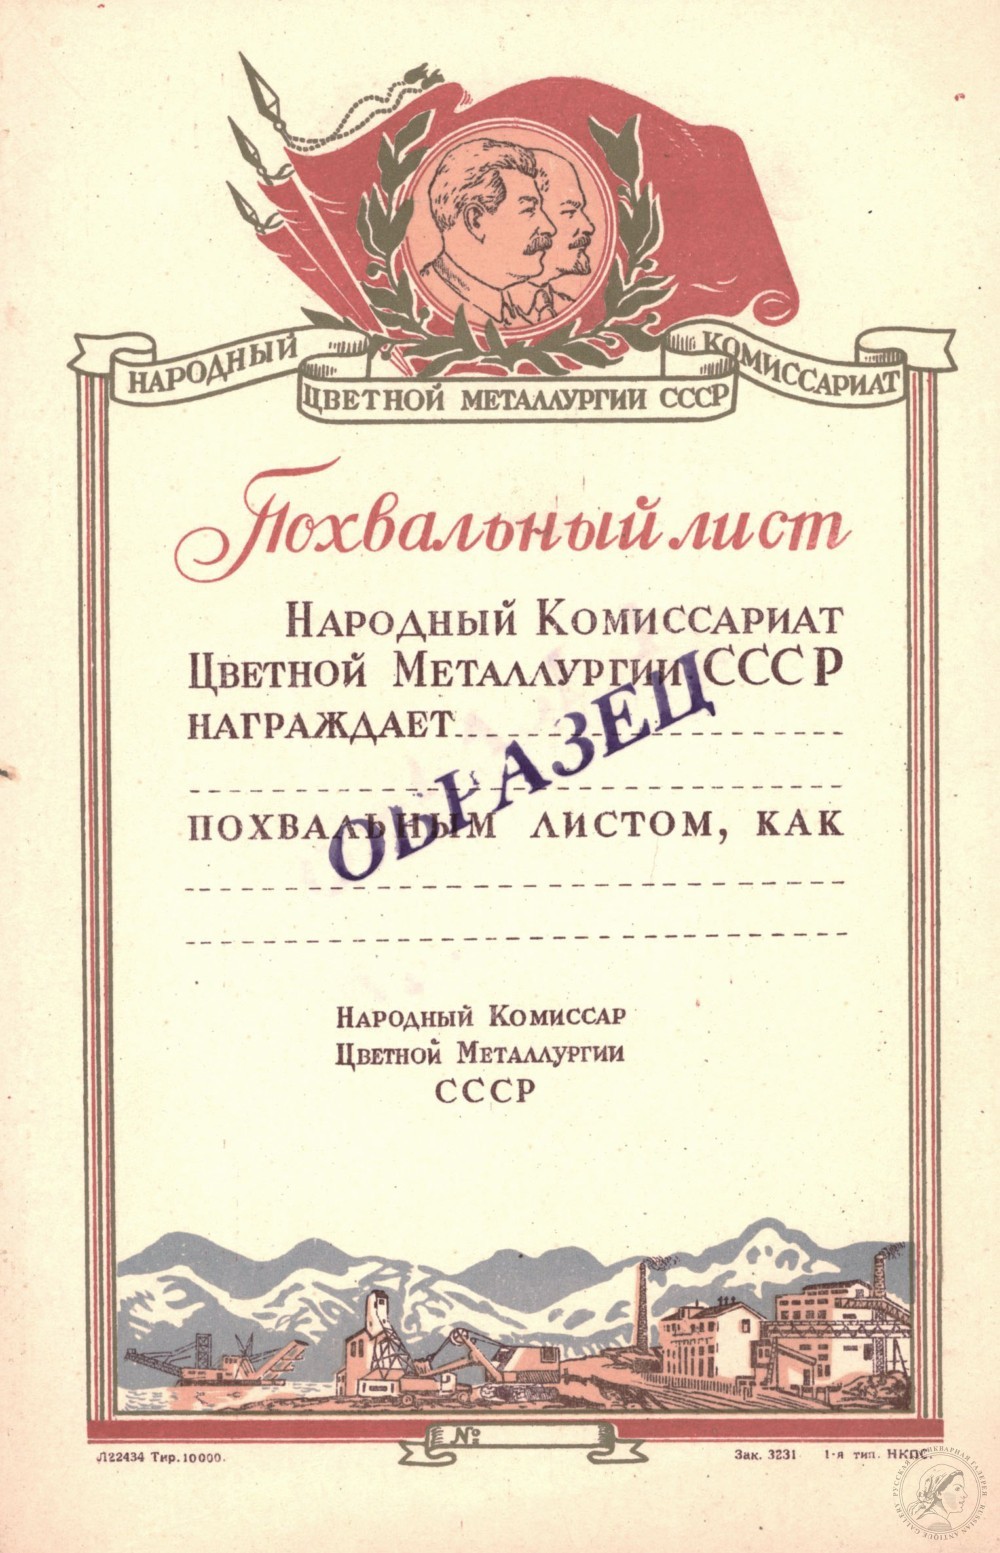 Похвальный лист Народного Комиссариата Цветной Металлургии СССР